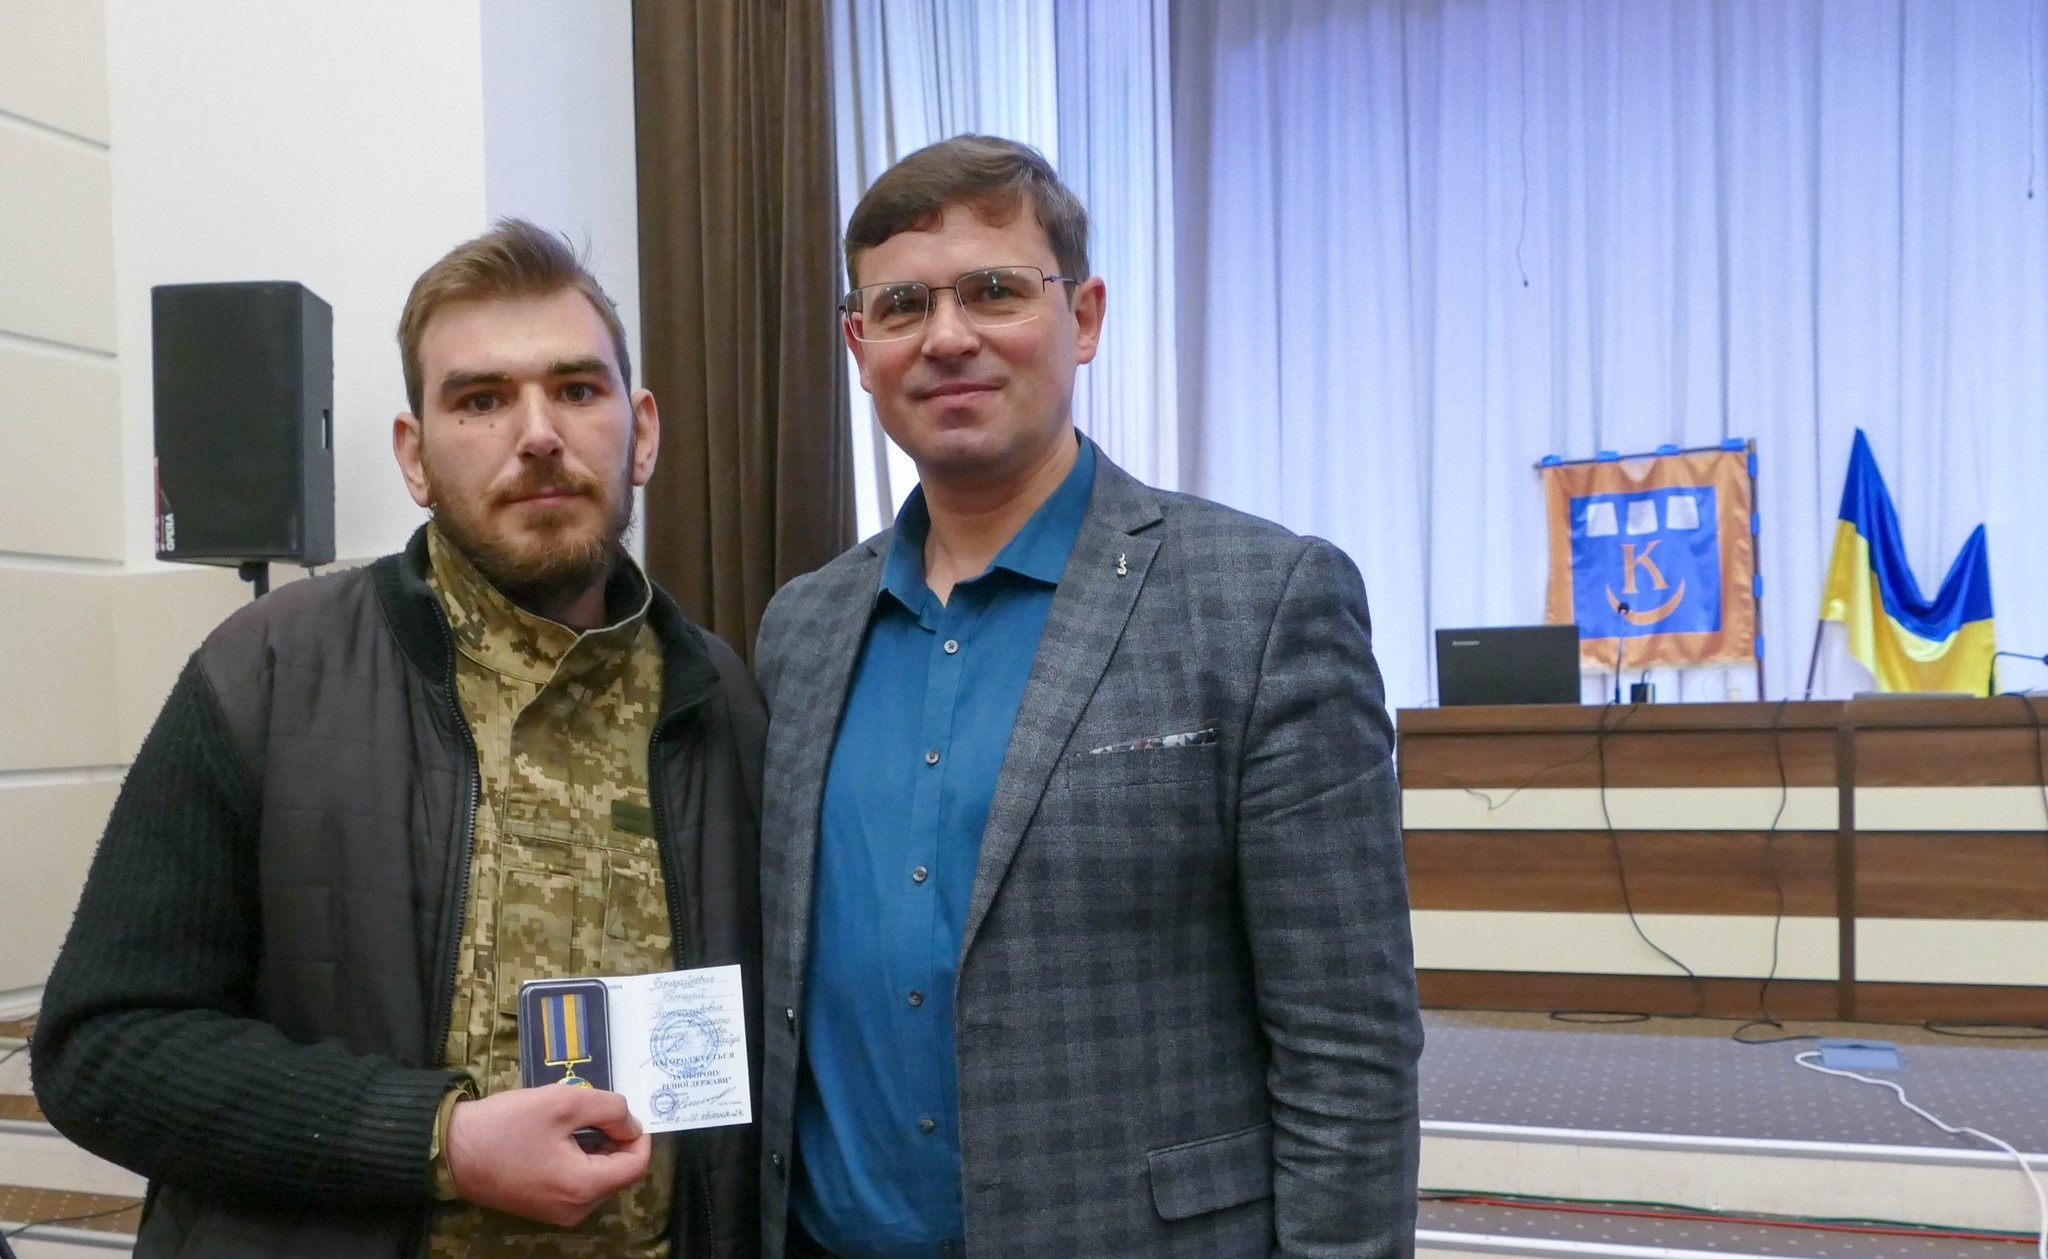 Захисникові з Калуша Віталію Бородайкевичу вручили медаль “За оборону рідної держави”